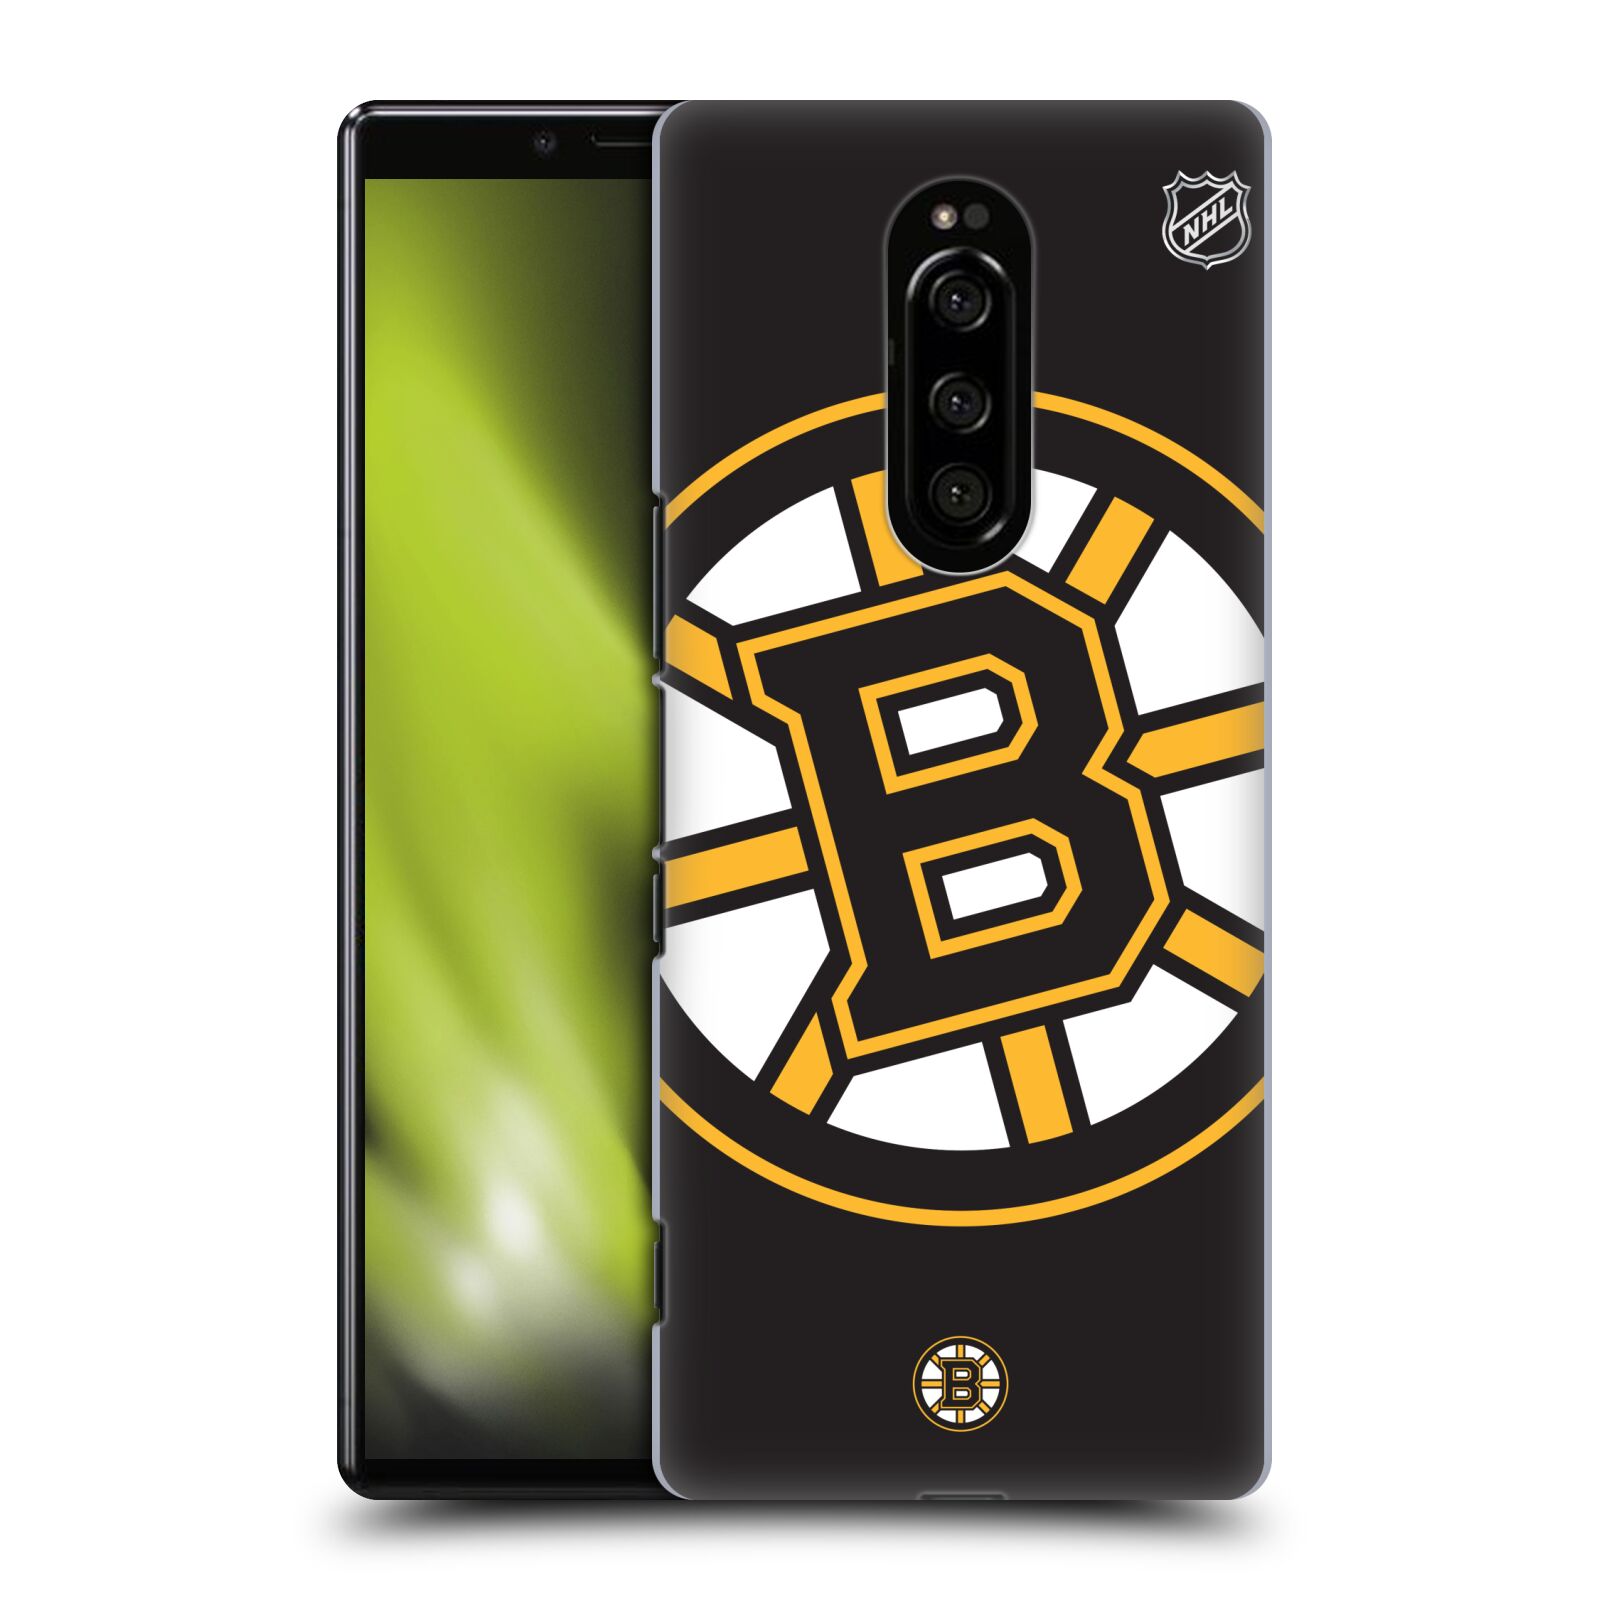 Pouzdro na mobil Sony Xperia 1 - HEAD CASE - Hokej NHL - Boston Bruins - velký znak